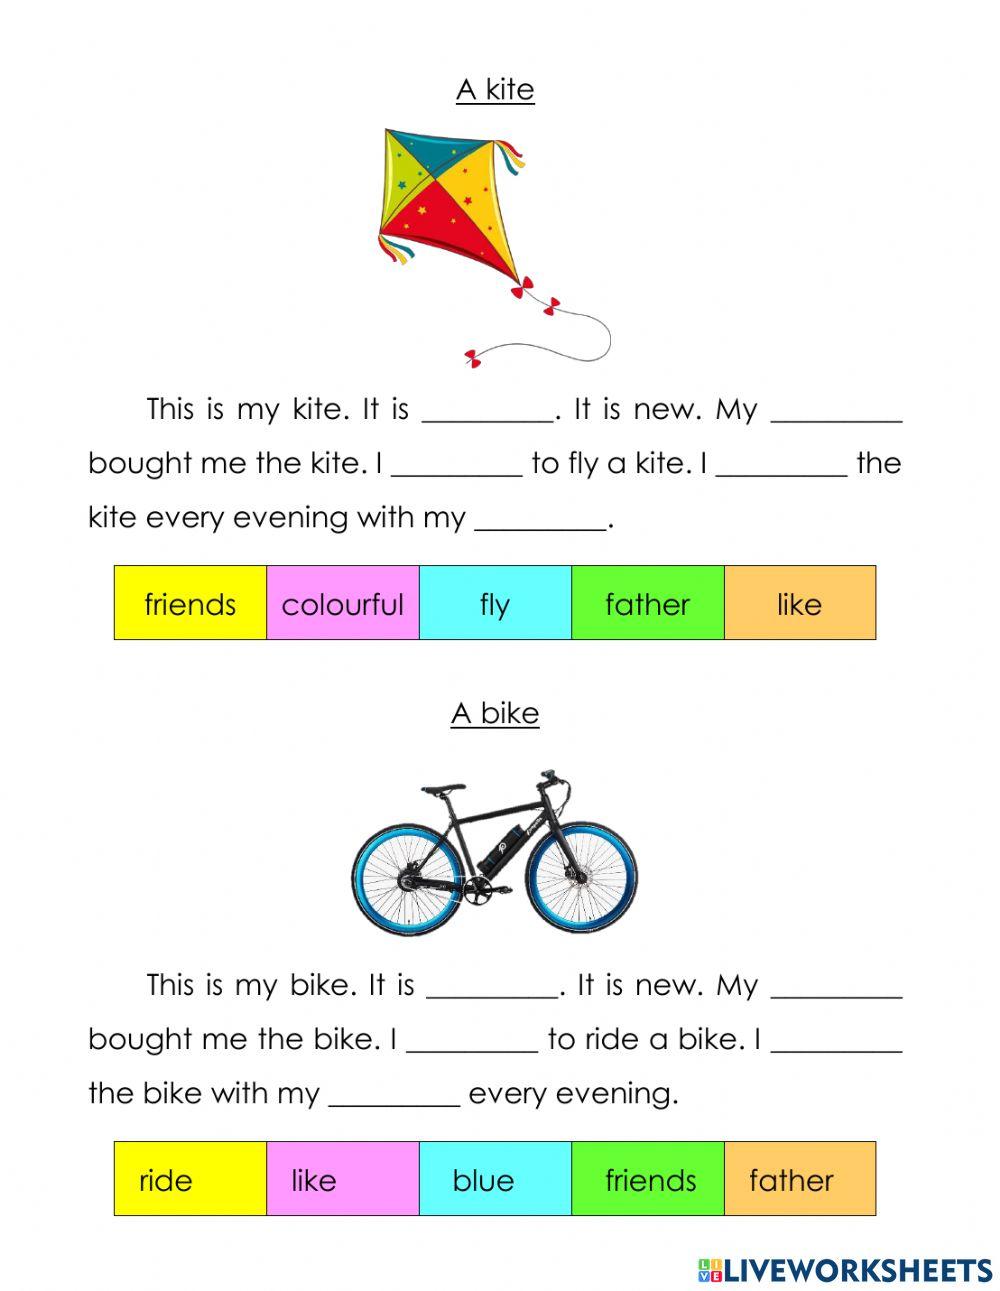 A kite and a bike